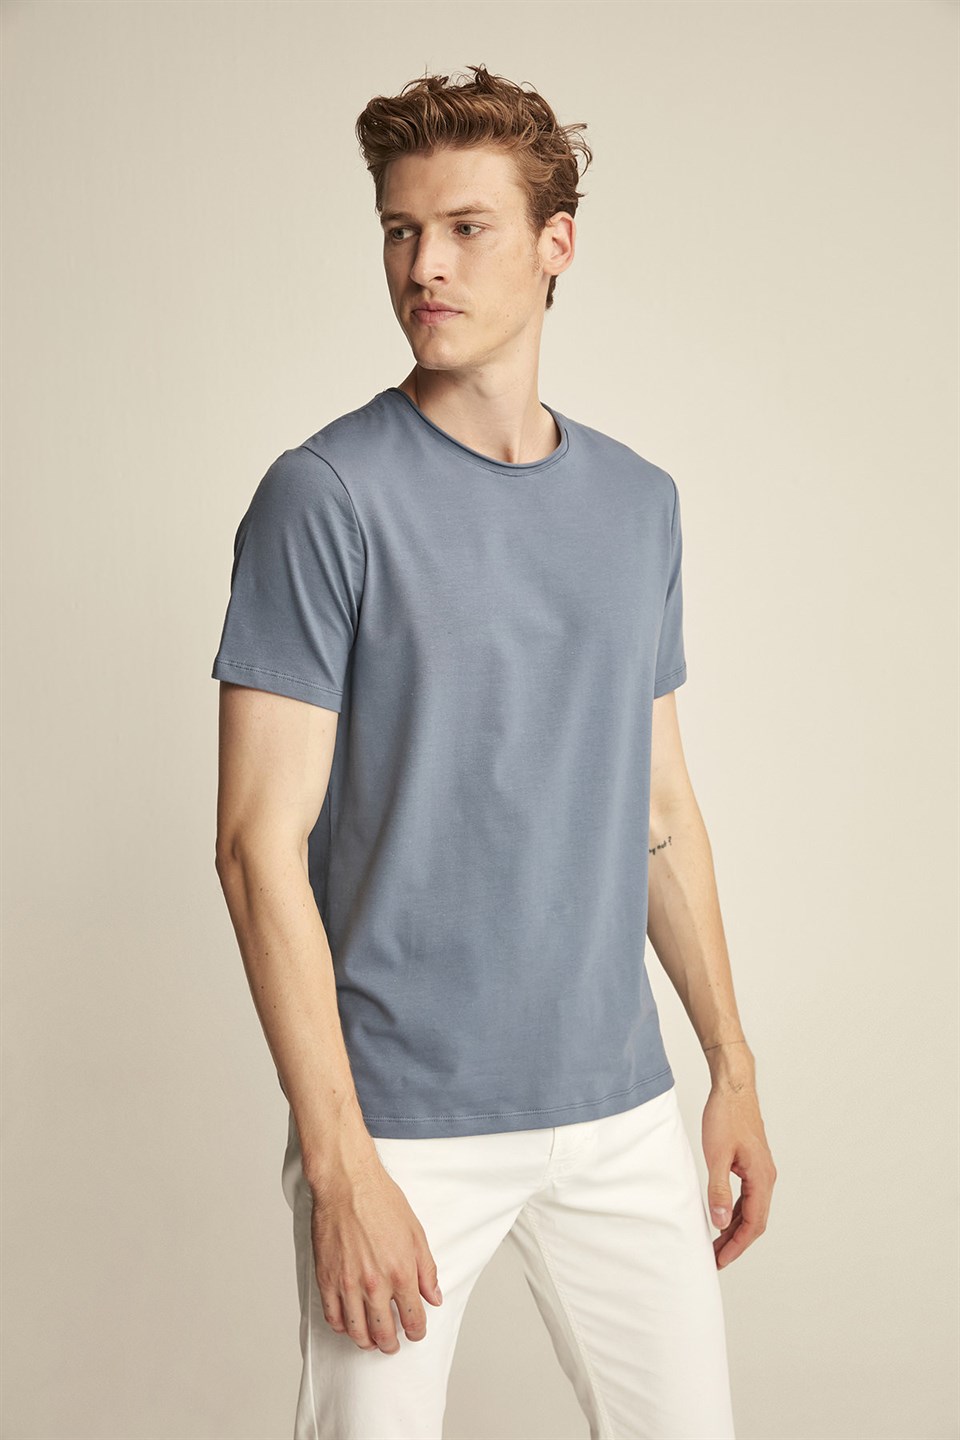 JACE Erkek İndigo Mavi Düz Renk Yuvarlak Yaka Slim Fit T-Shirt